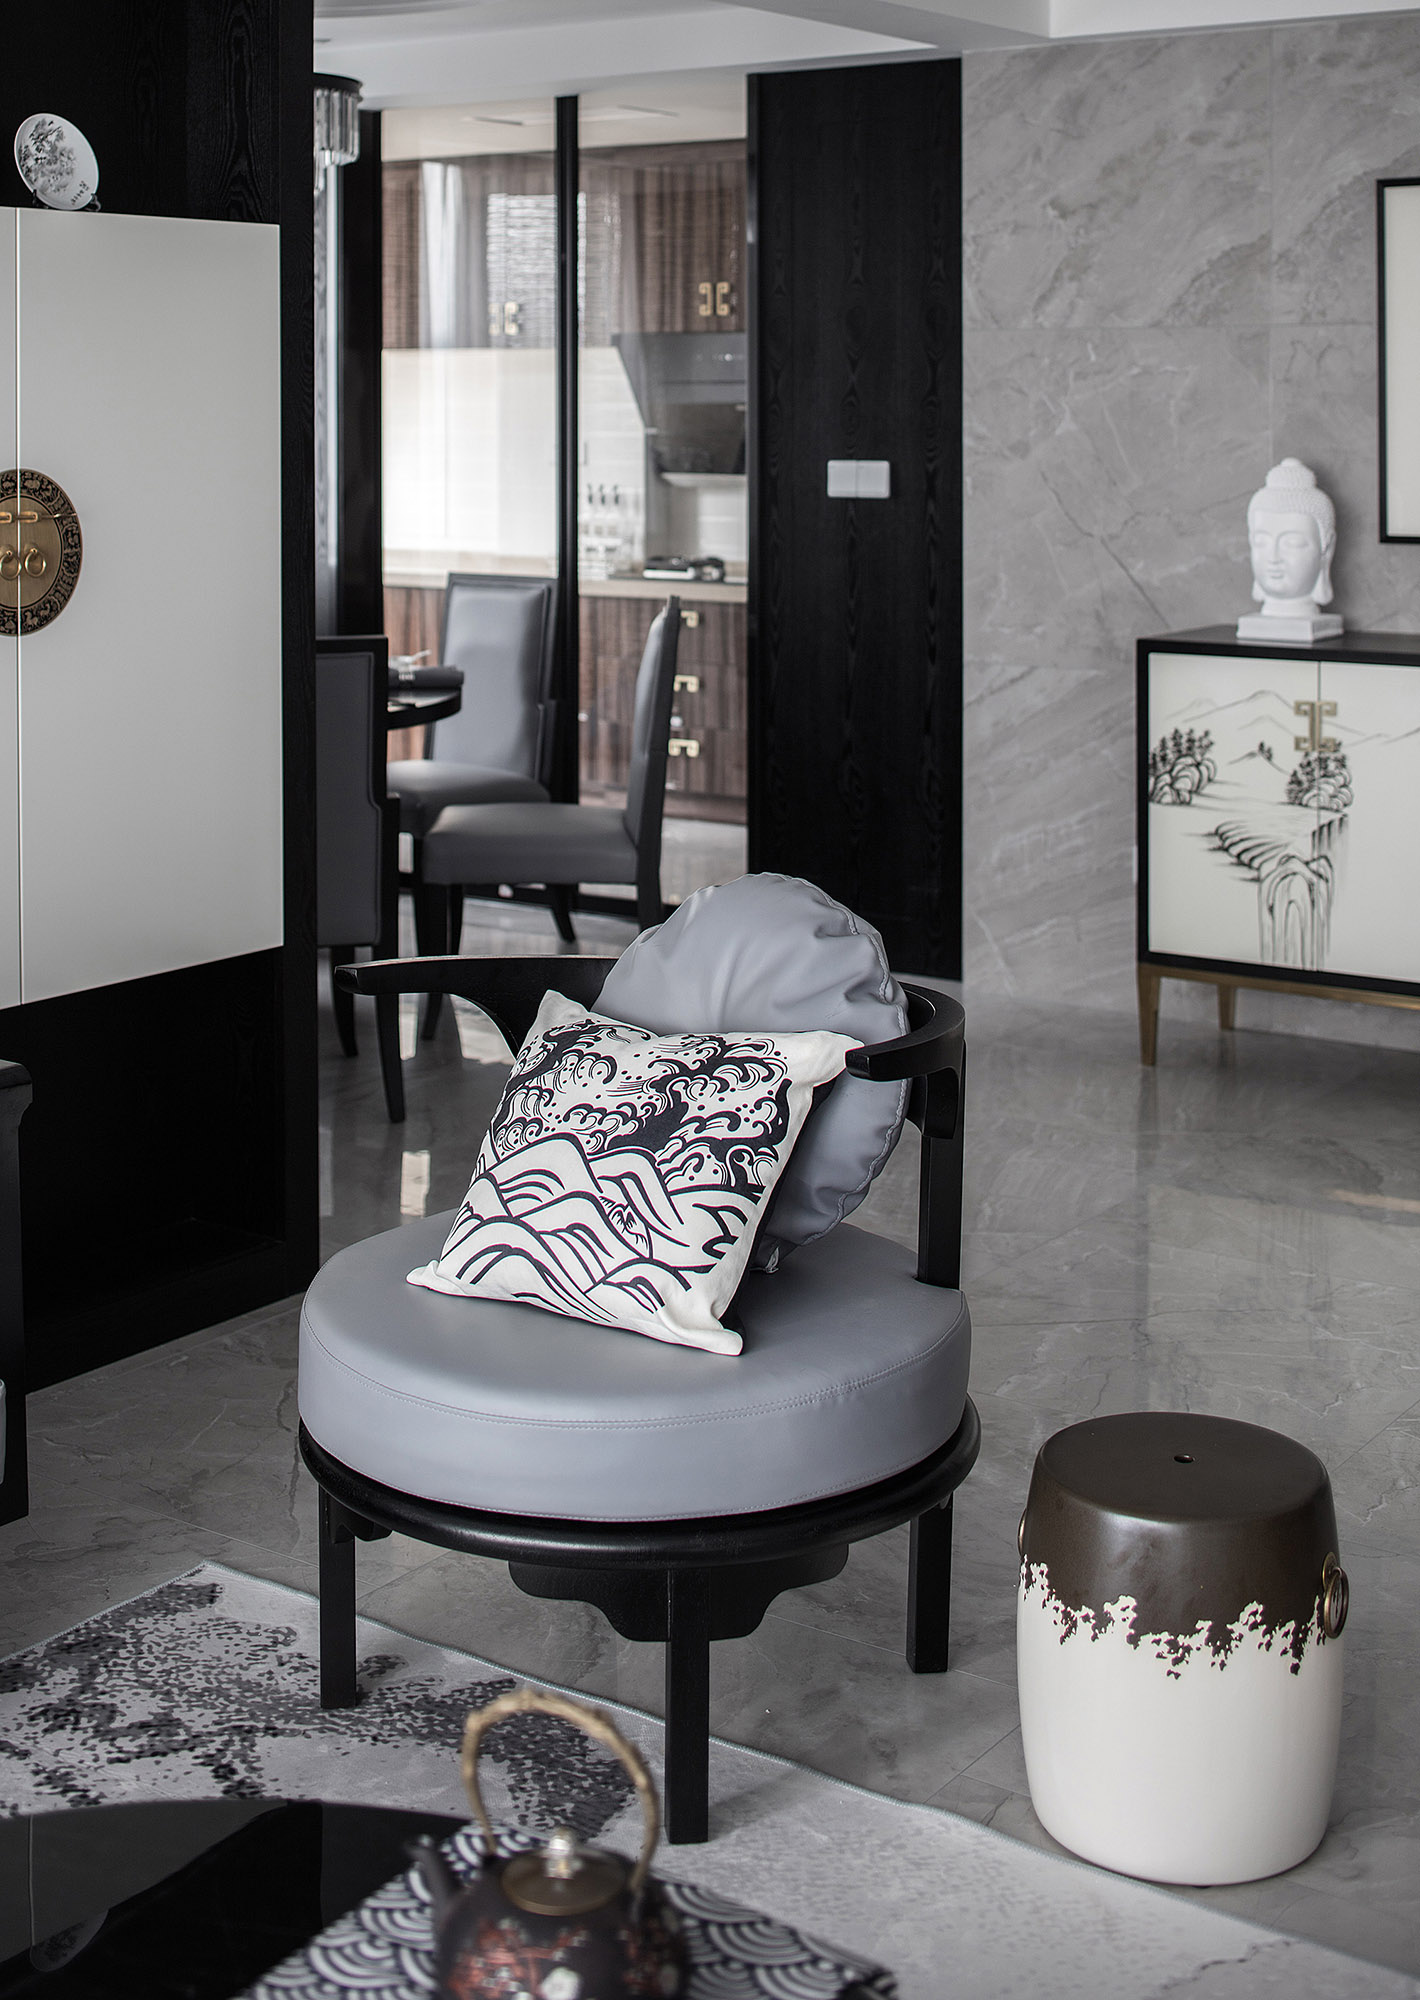 简约 现代中式 客厅定制 全屋整装 80后图片来自石木源设计在新中式2的分享